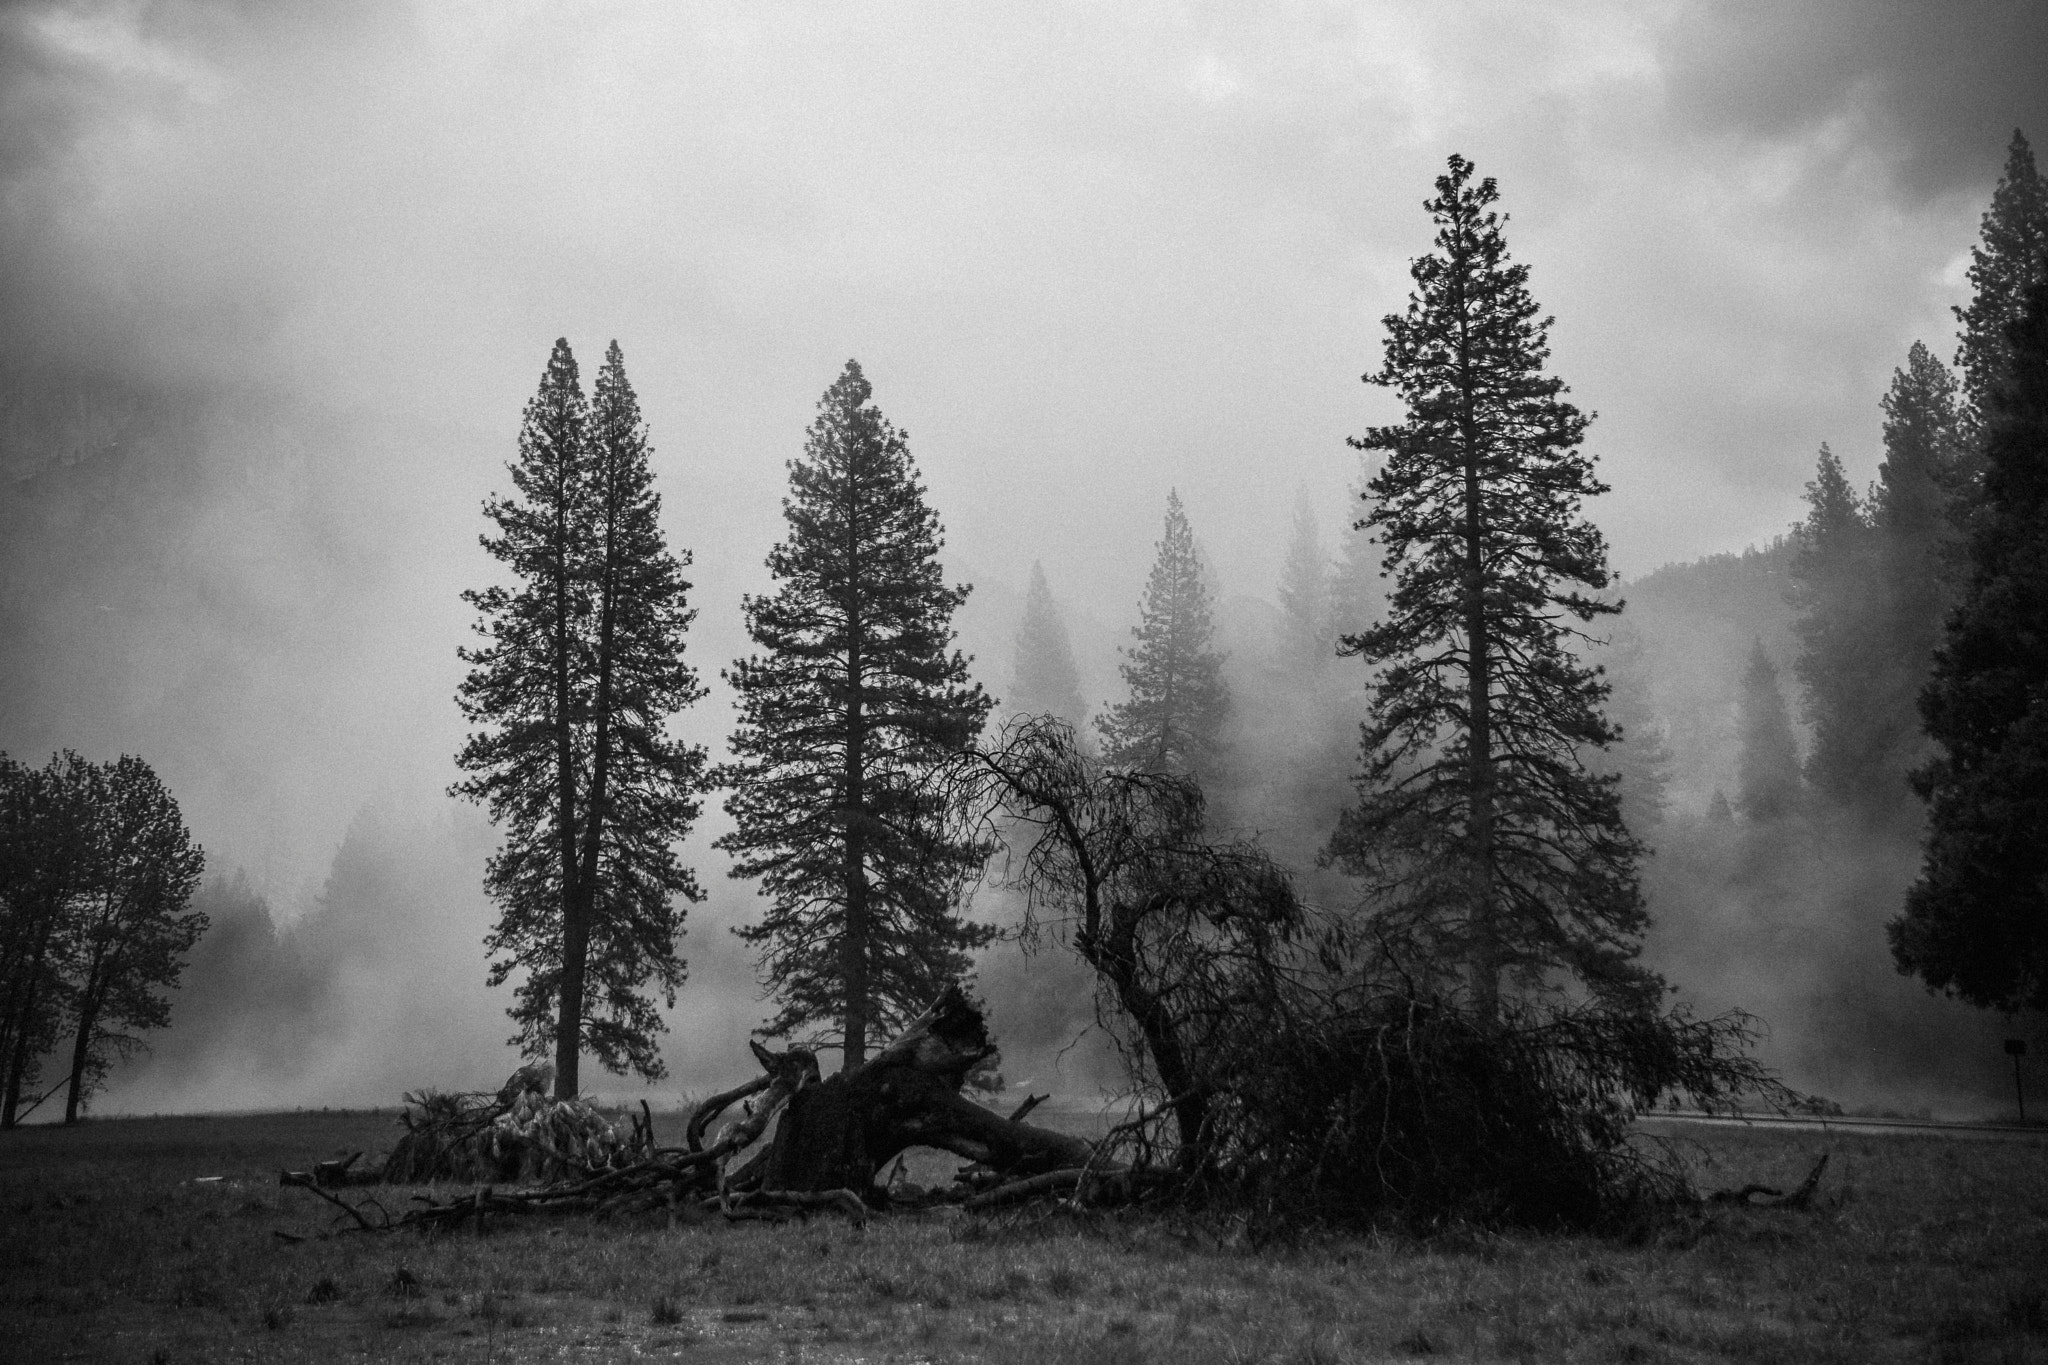 Nikon D3300 + Nikon AF-S DX Nikkor 16-85mm F3.5-5.6G ED VR sample photo. Yosemite valley in the fog photography